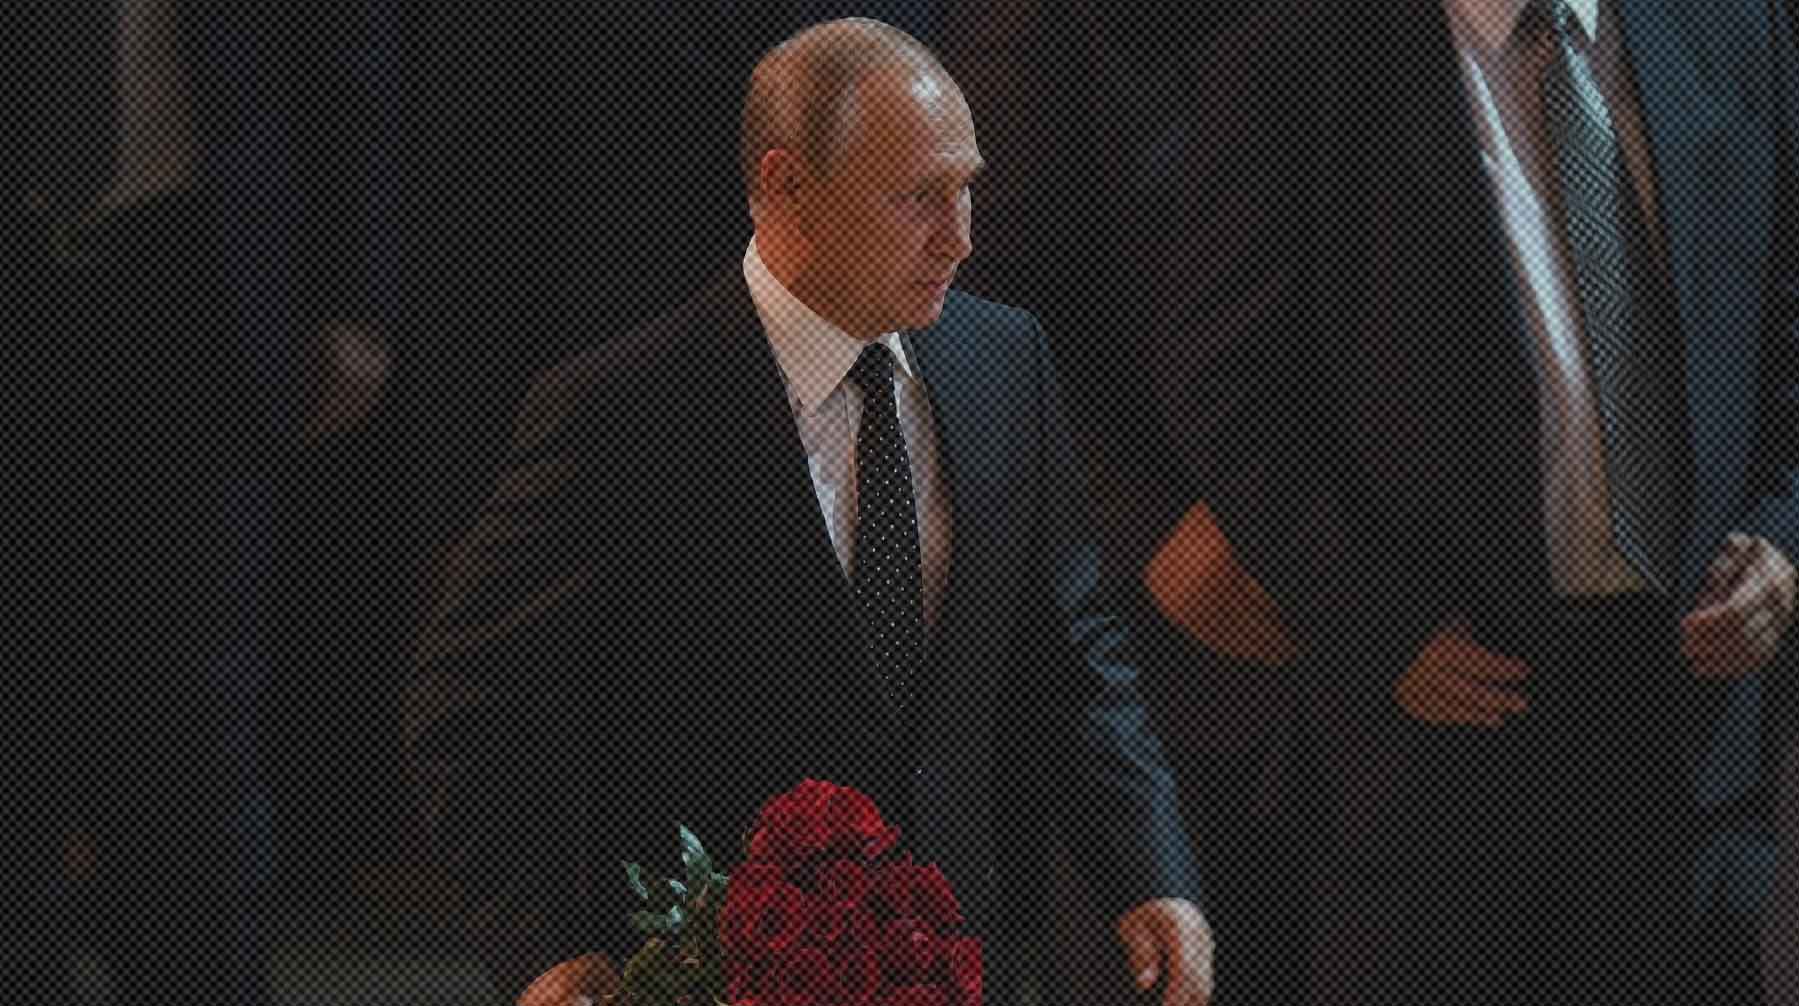 Глава государства заехал в Центральную клиническую больницу и положил цветы у гроба первого президента СССР Фото: Global Look Press / Президентство России